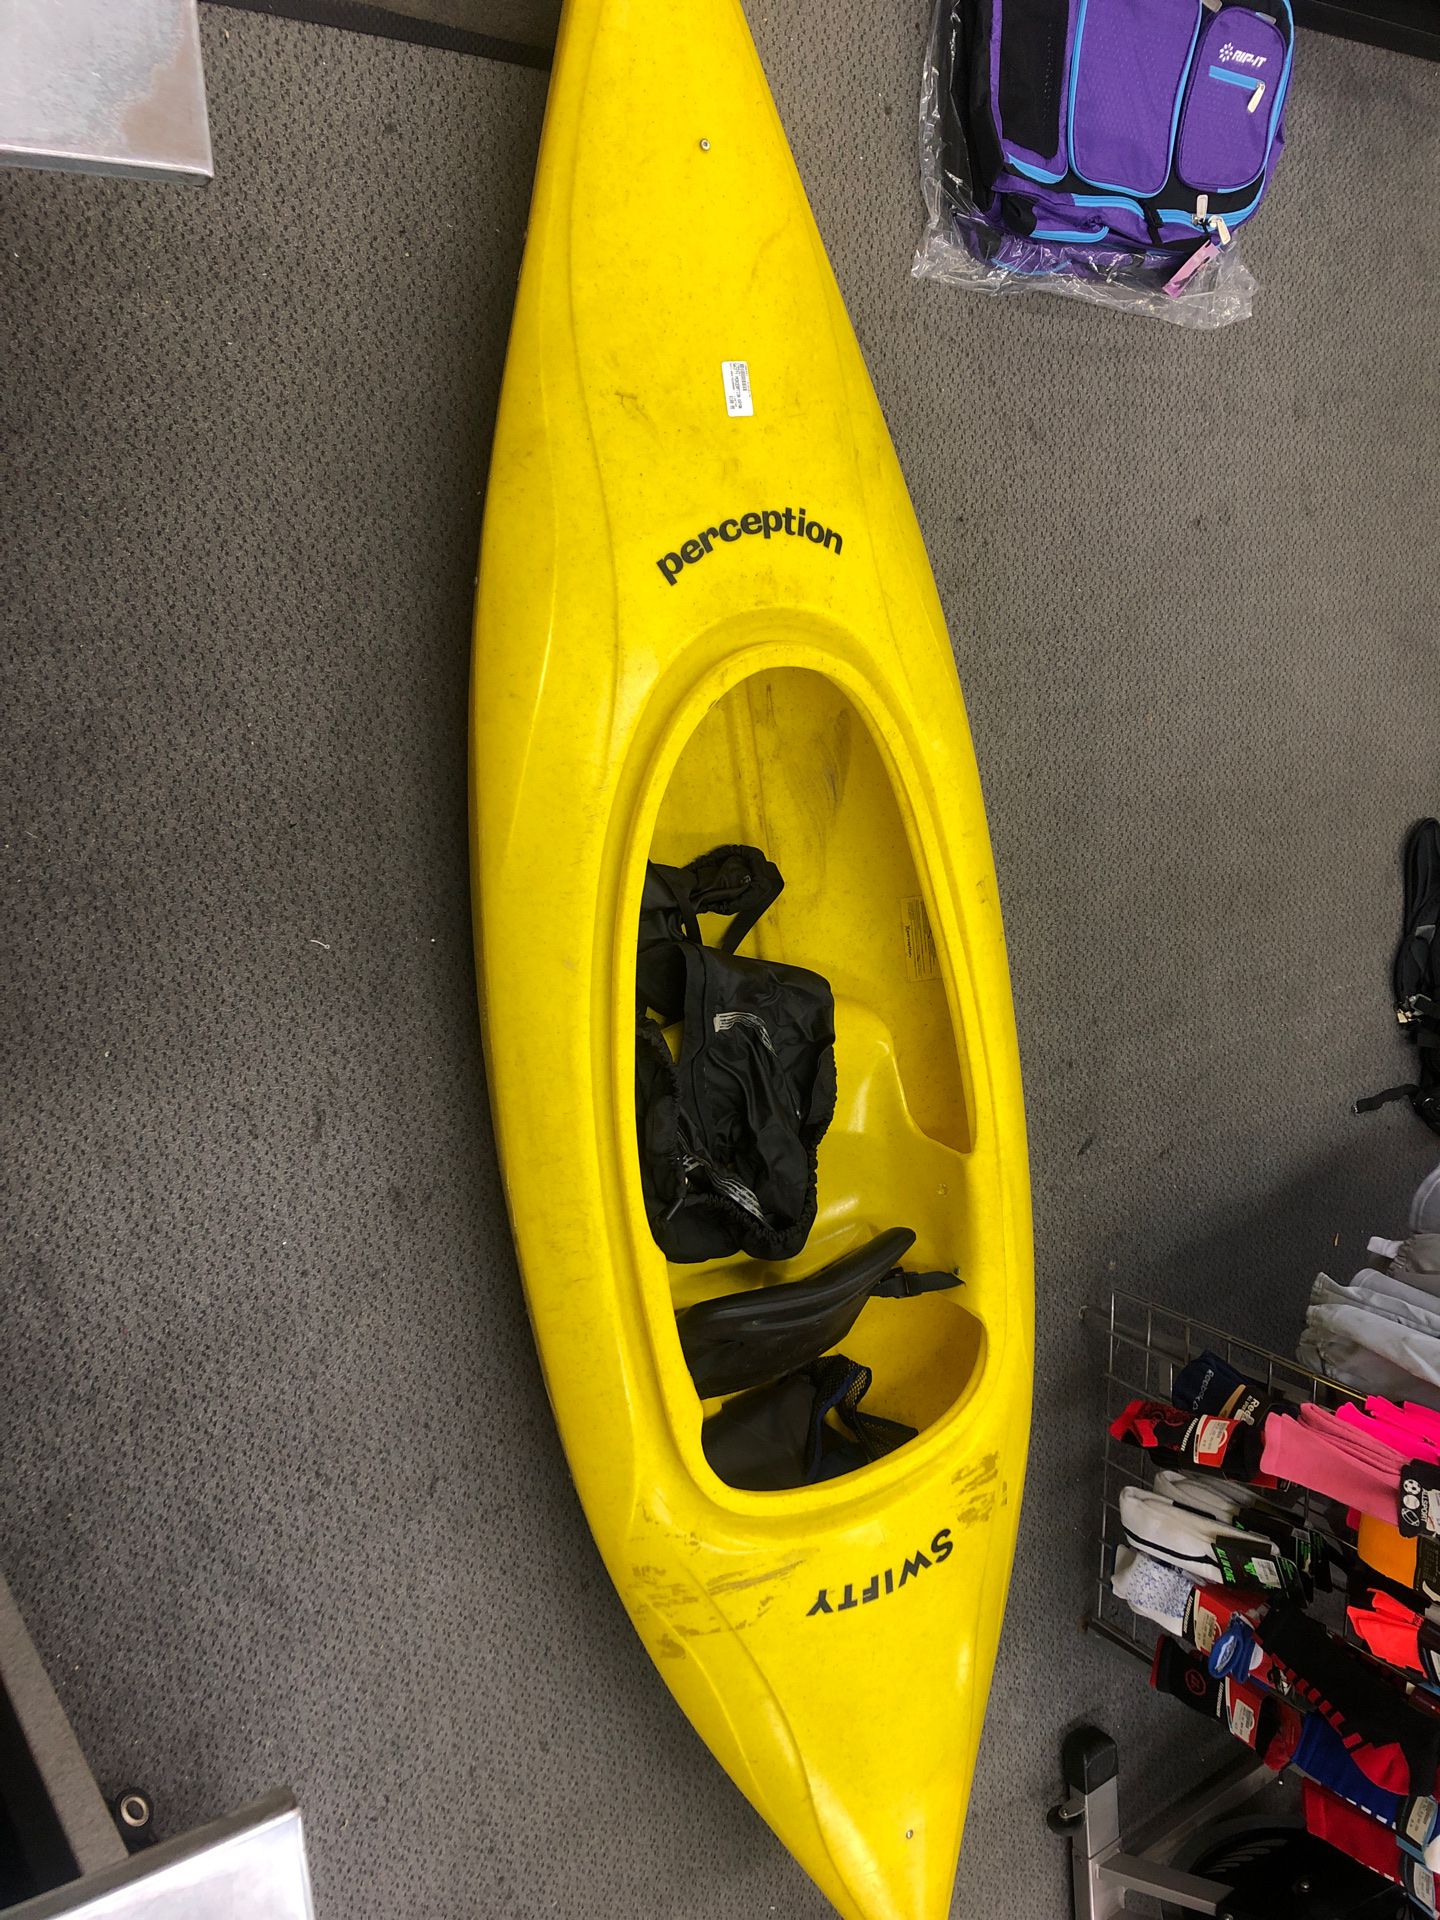 Swiftly perception kayak